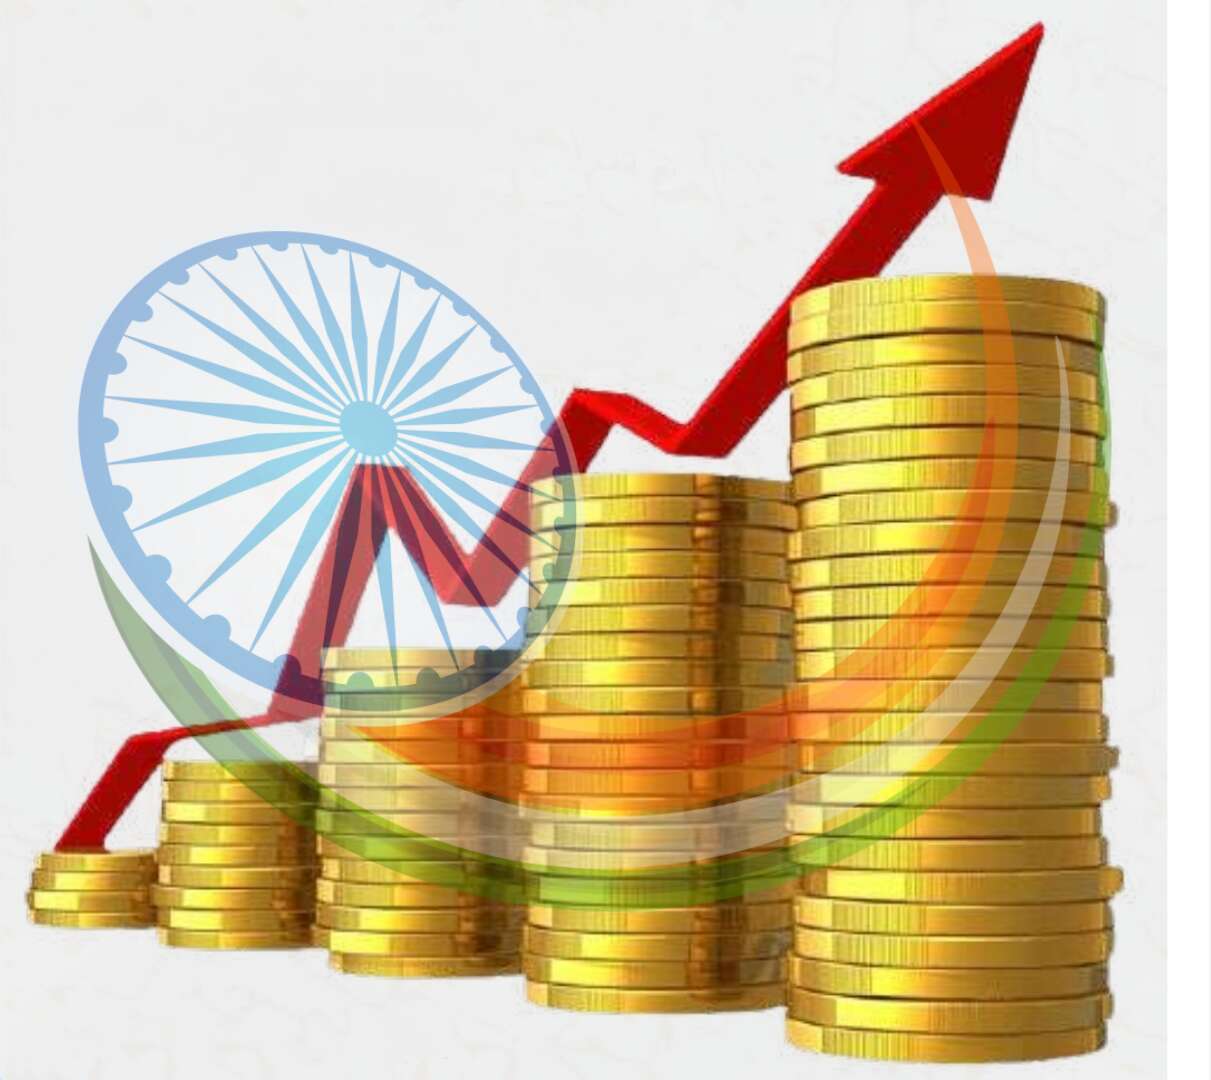 अपने औपनिवेशिक शासक ब्रिटेन को पछाड़ भारत विश्व की 5वीं बड़ी अर्थव्यवस्था